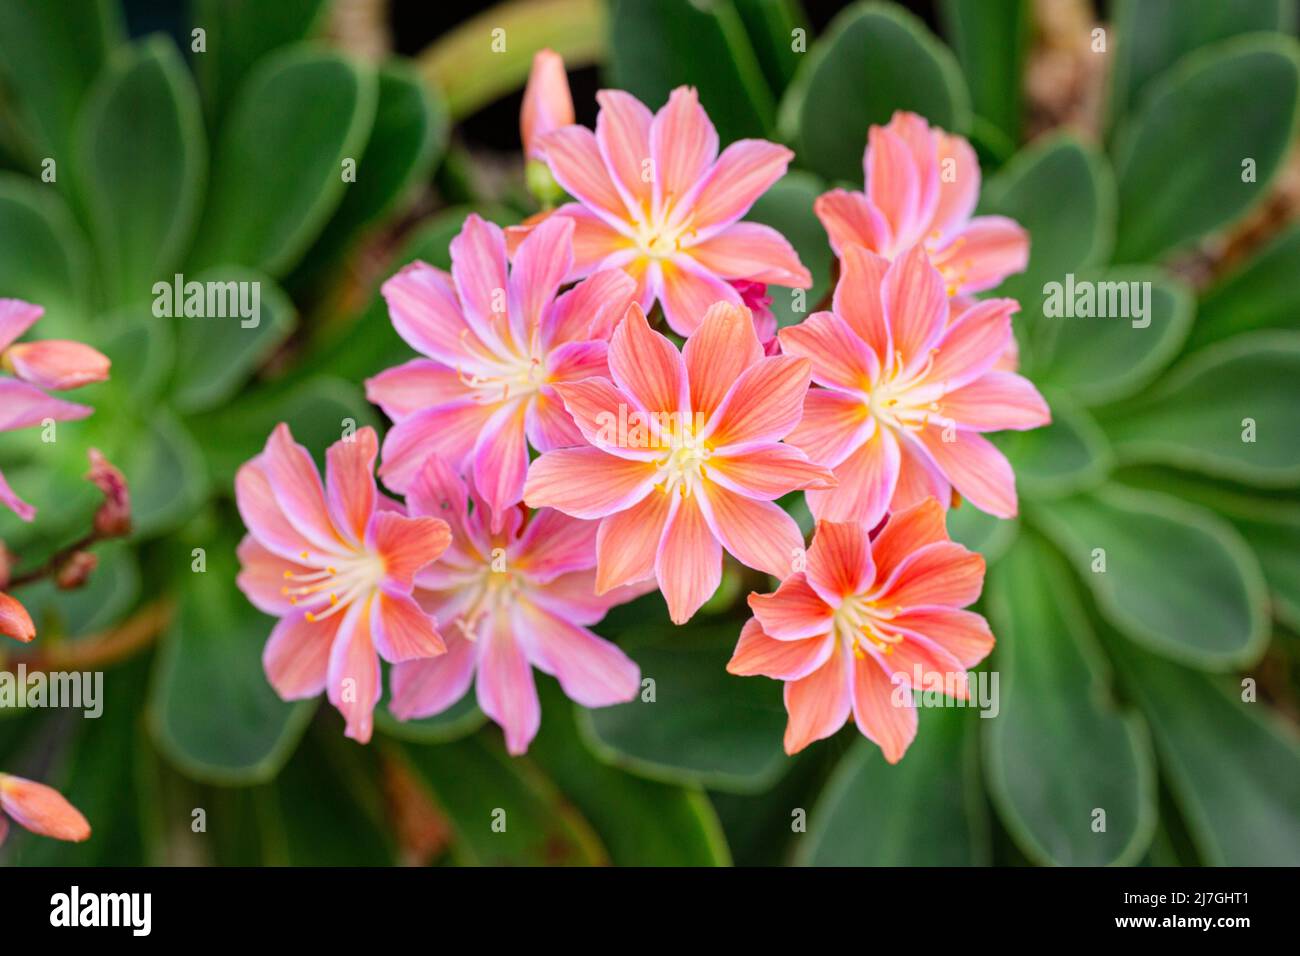 Lewisia cotyledon flowers growing on outdoor garden. Siskiyou lewisia Stock Photo